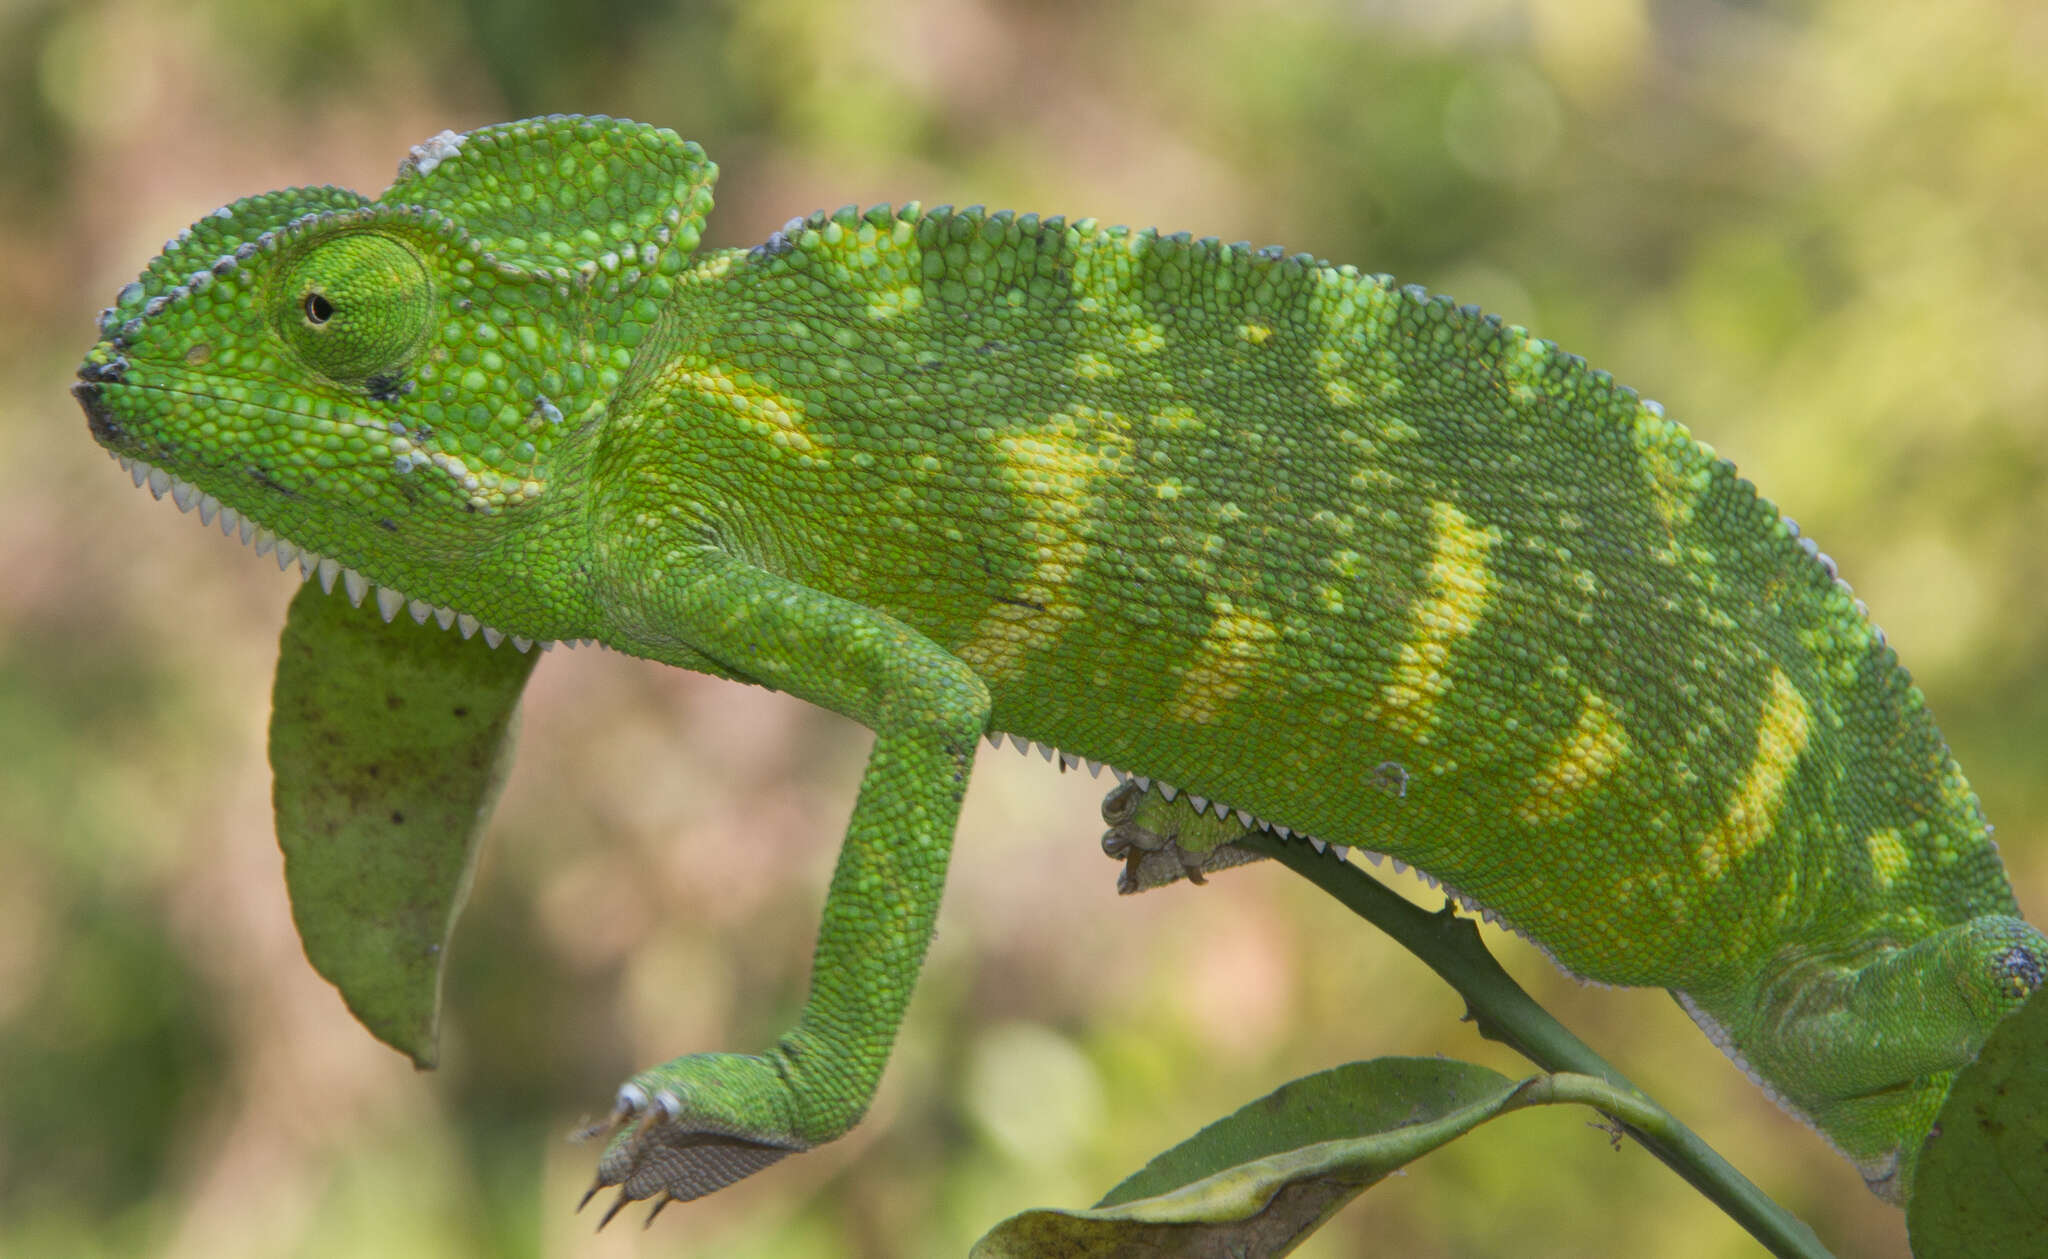 Image of Asian Chameleon